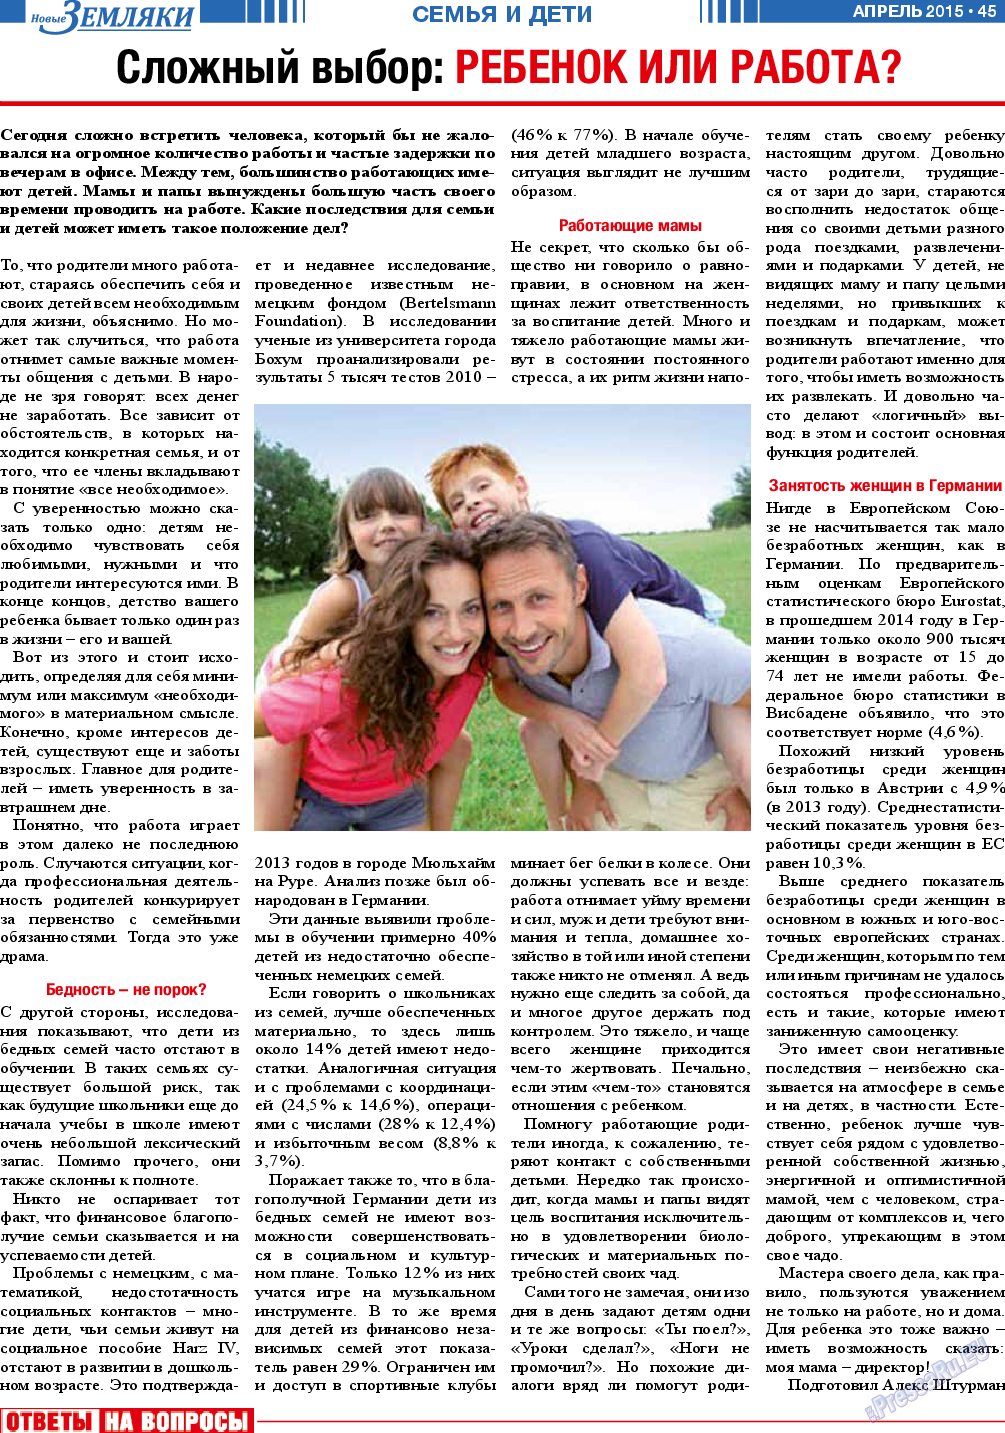 Новые Земляки, газета. 2015 №4 стр.45